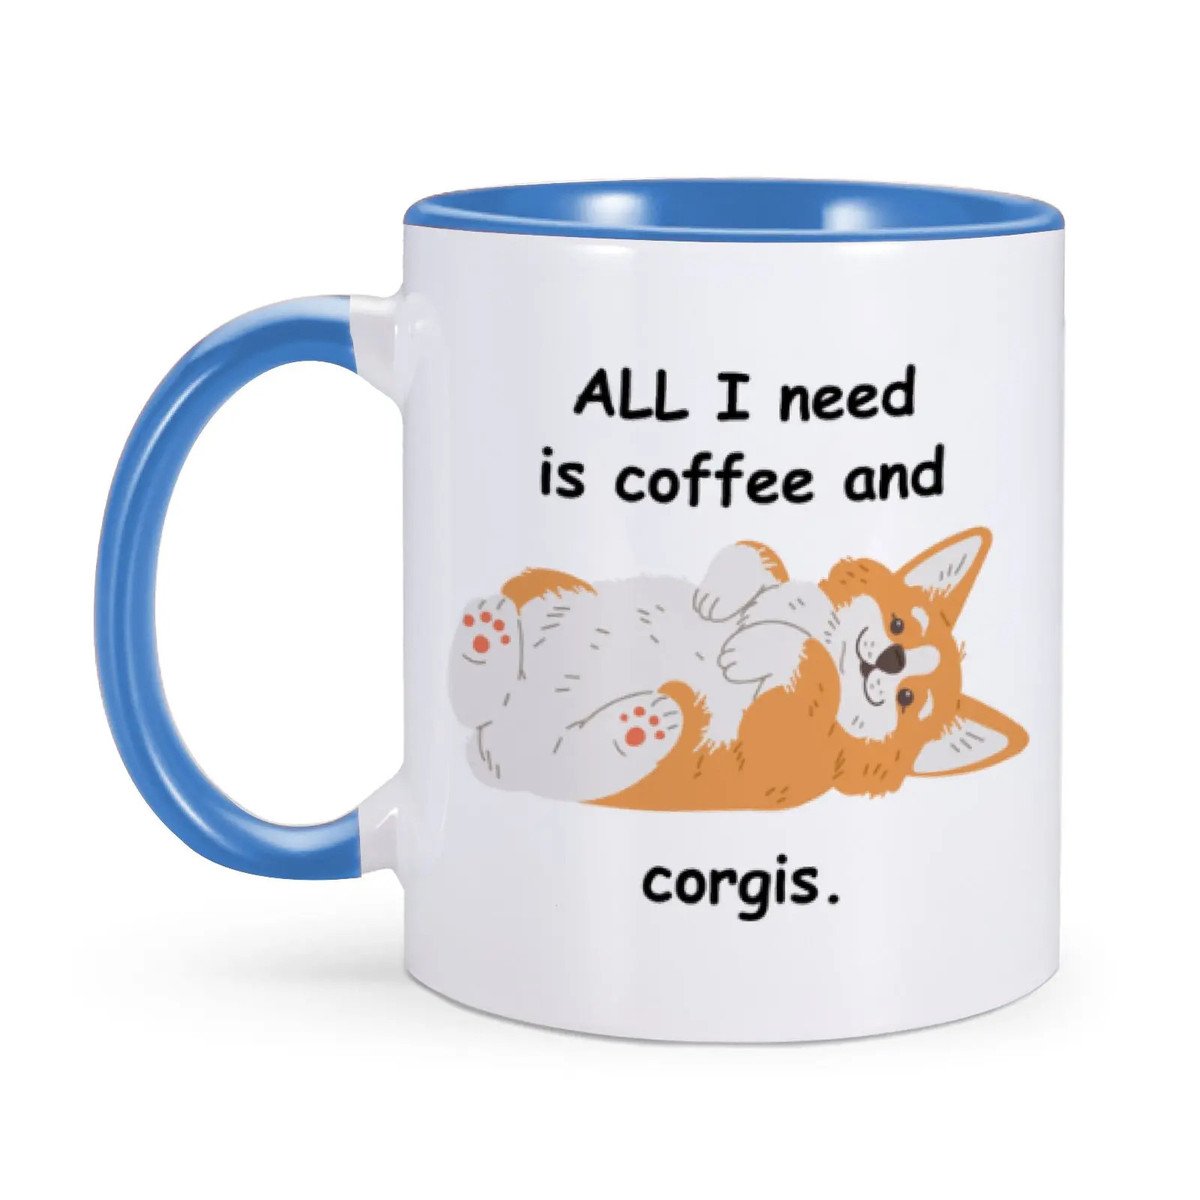 Cute Corgi Pattern Ceramics Camping Mug